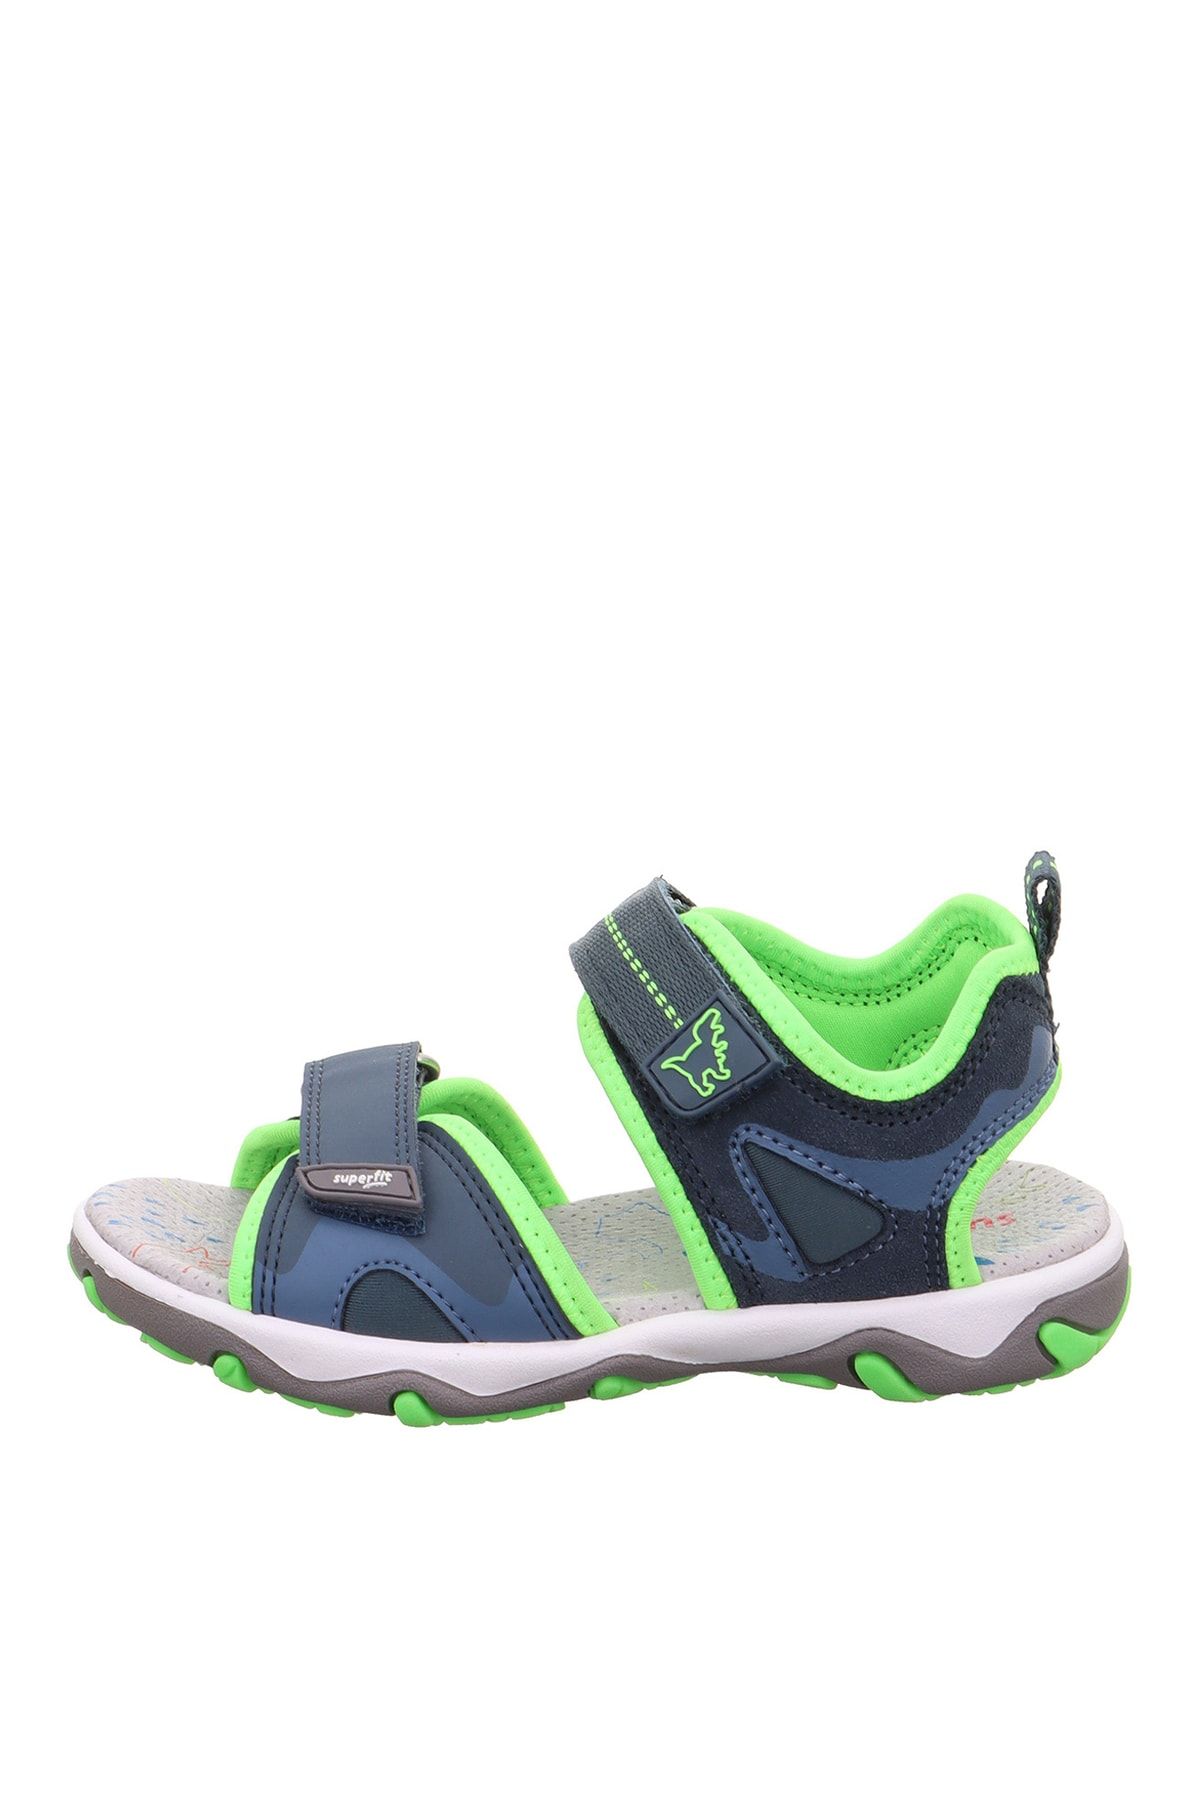 Superfit Mavi - Yeşil Erkek Sandalet Mıke 3.0 1-009470-8030-2